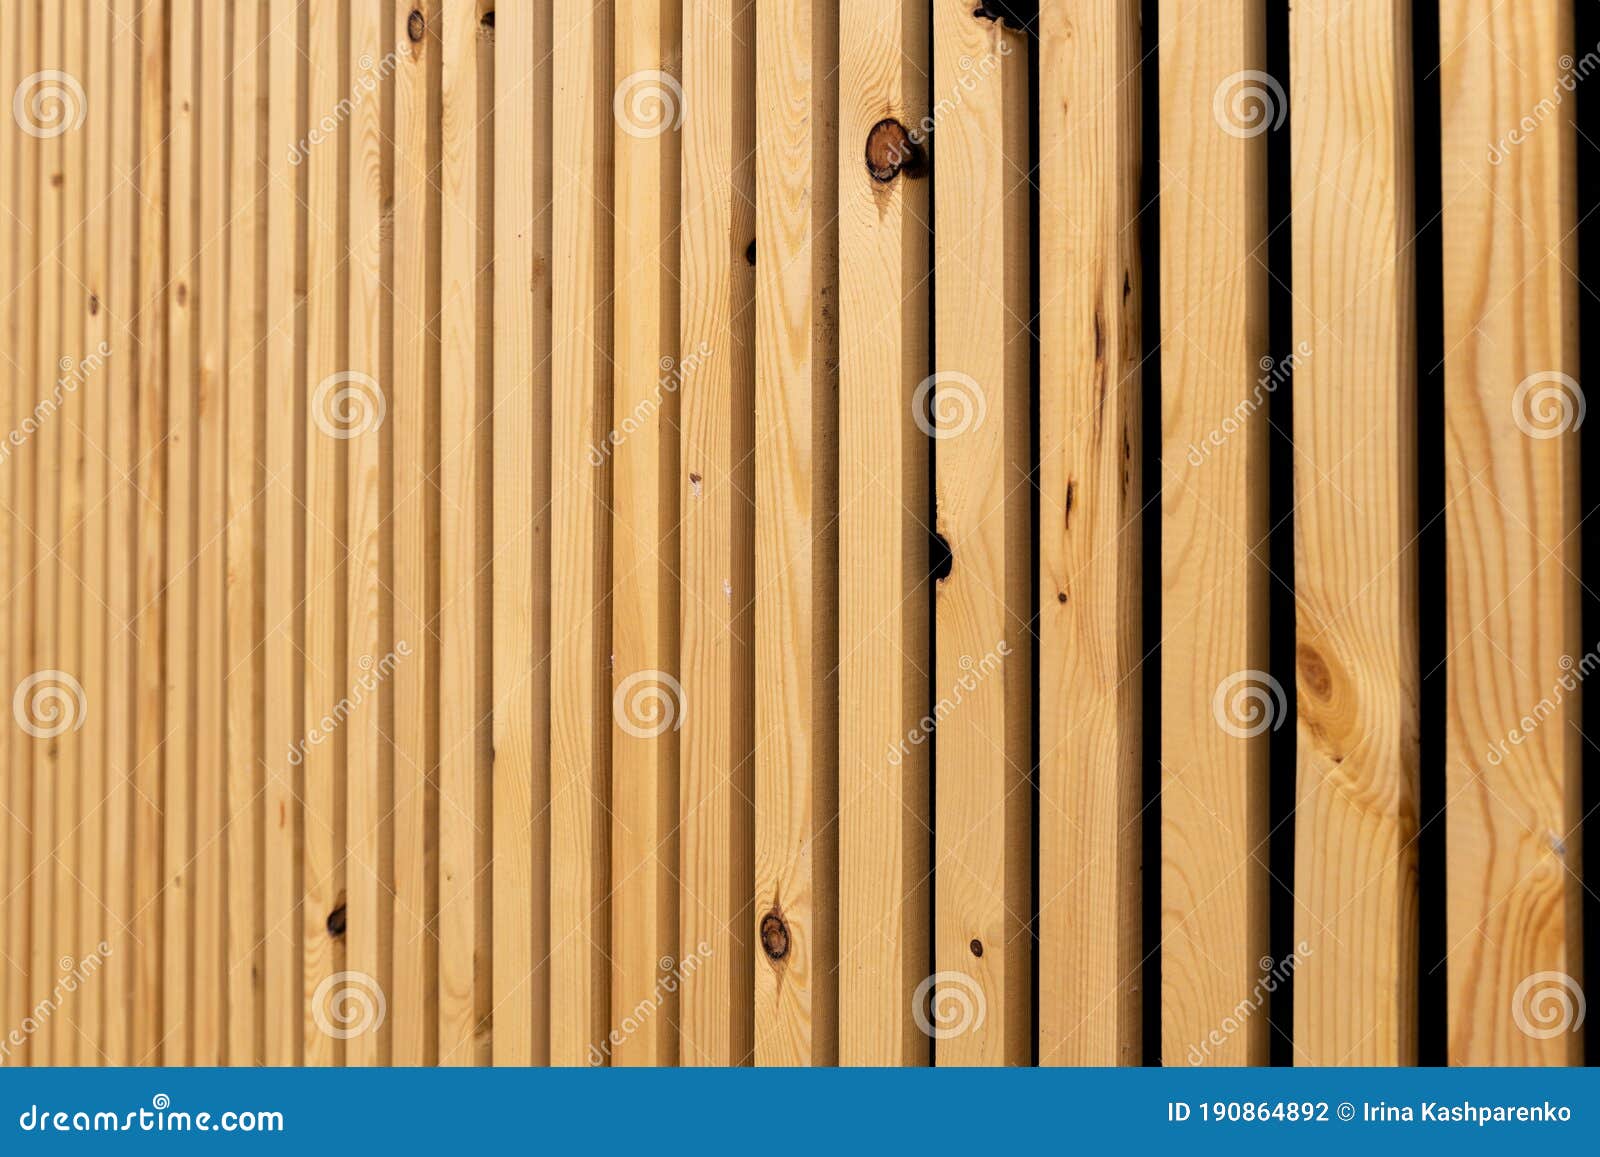 Khung gỗ tự nhiên Bạn đã bao giờ tự hỏi rằng một chiếc hộp hoặc khung ảnh có thể nhìn thật đẹp chỉ với những thanh gỗ đơn giản, tự nhiên? Hãy nhấn vào ảnh để xem chi tiết và cảm nhận sự mộc mạc của khung gỗ tự nhiên.